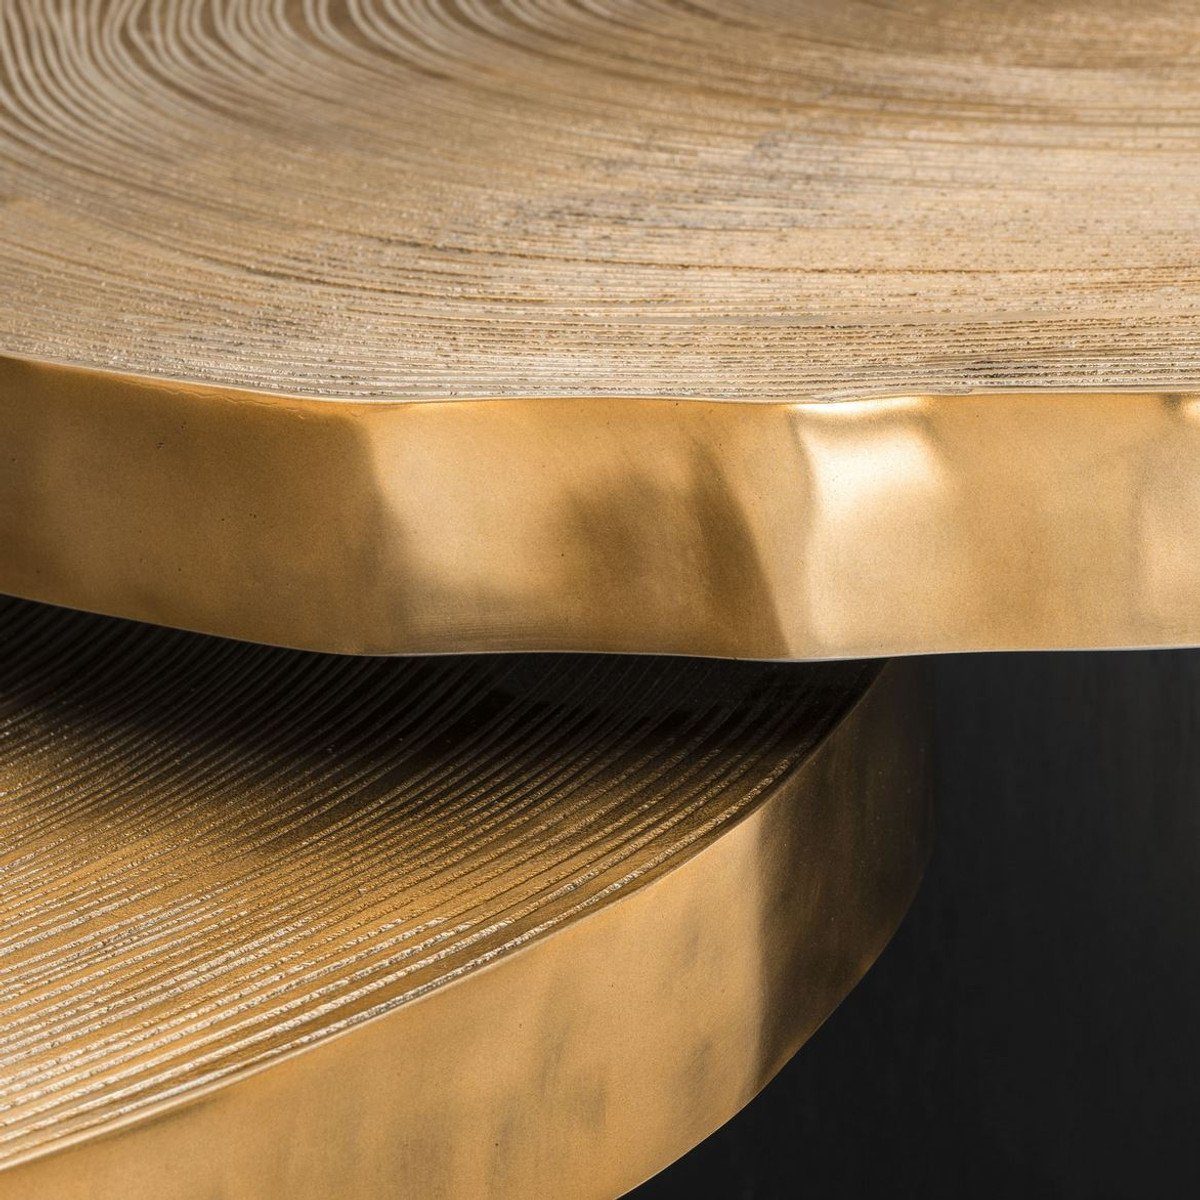 Luxus Luxuriöse Baumscheiben / Tischplatten Couchtisch mit Set im Couchtisch Messingfarben Wohnzimmertische Schwarz Casa Padrino Design -